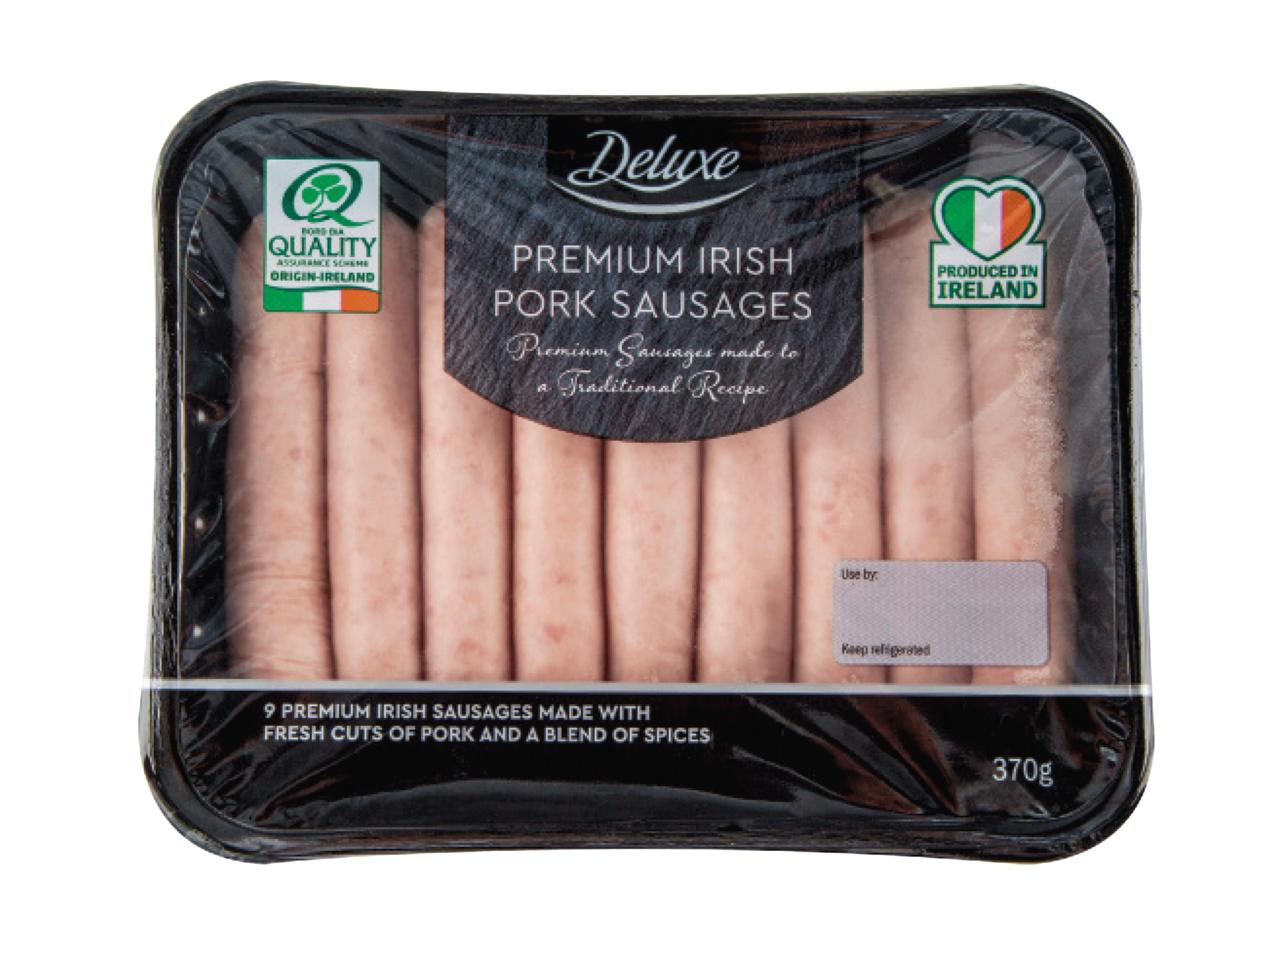 DELUXE Premium Irish Pork Sausages